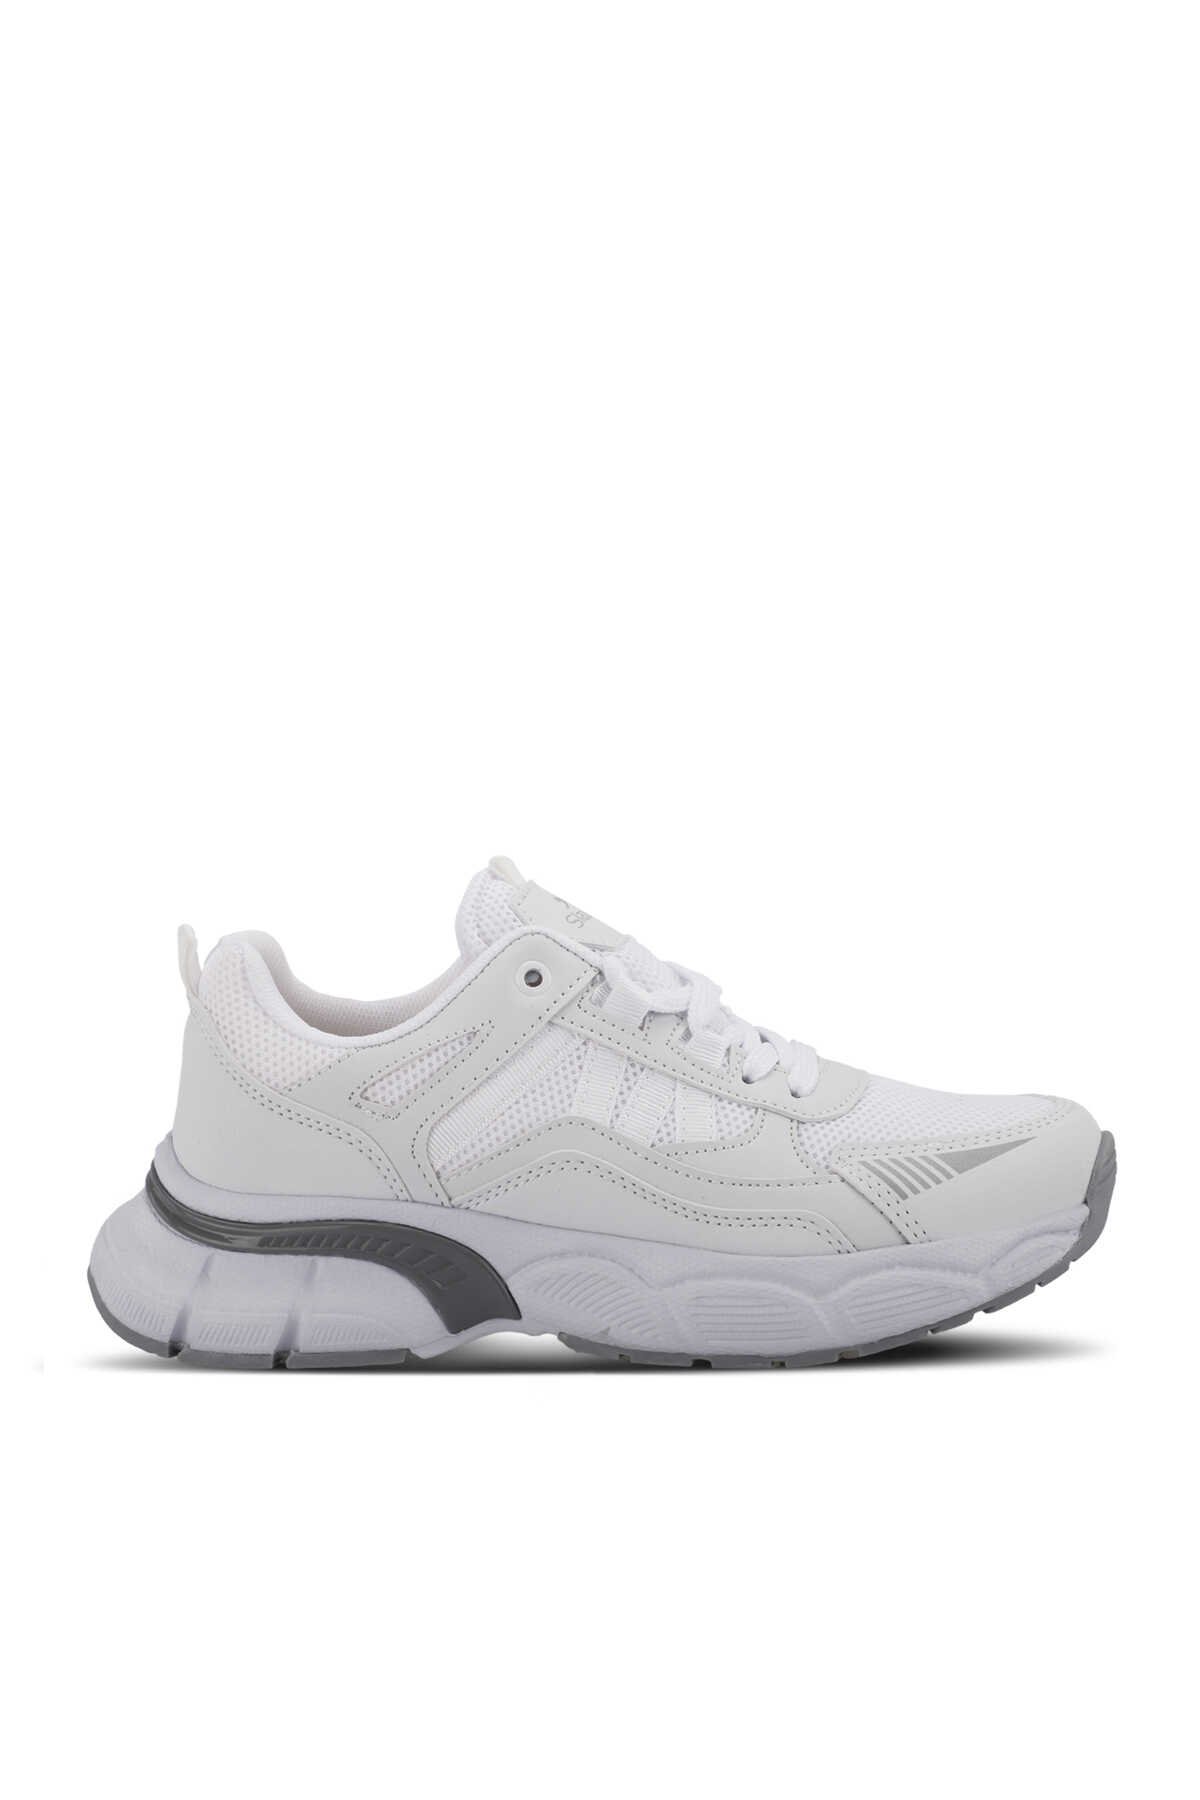 Slazenger - Slazenger ZELLA Kadın Sneaker Ayakkabı Beyaz / Gümüş